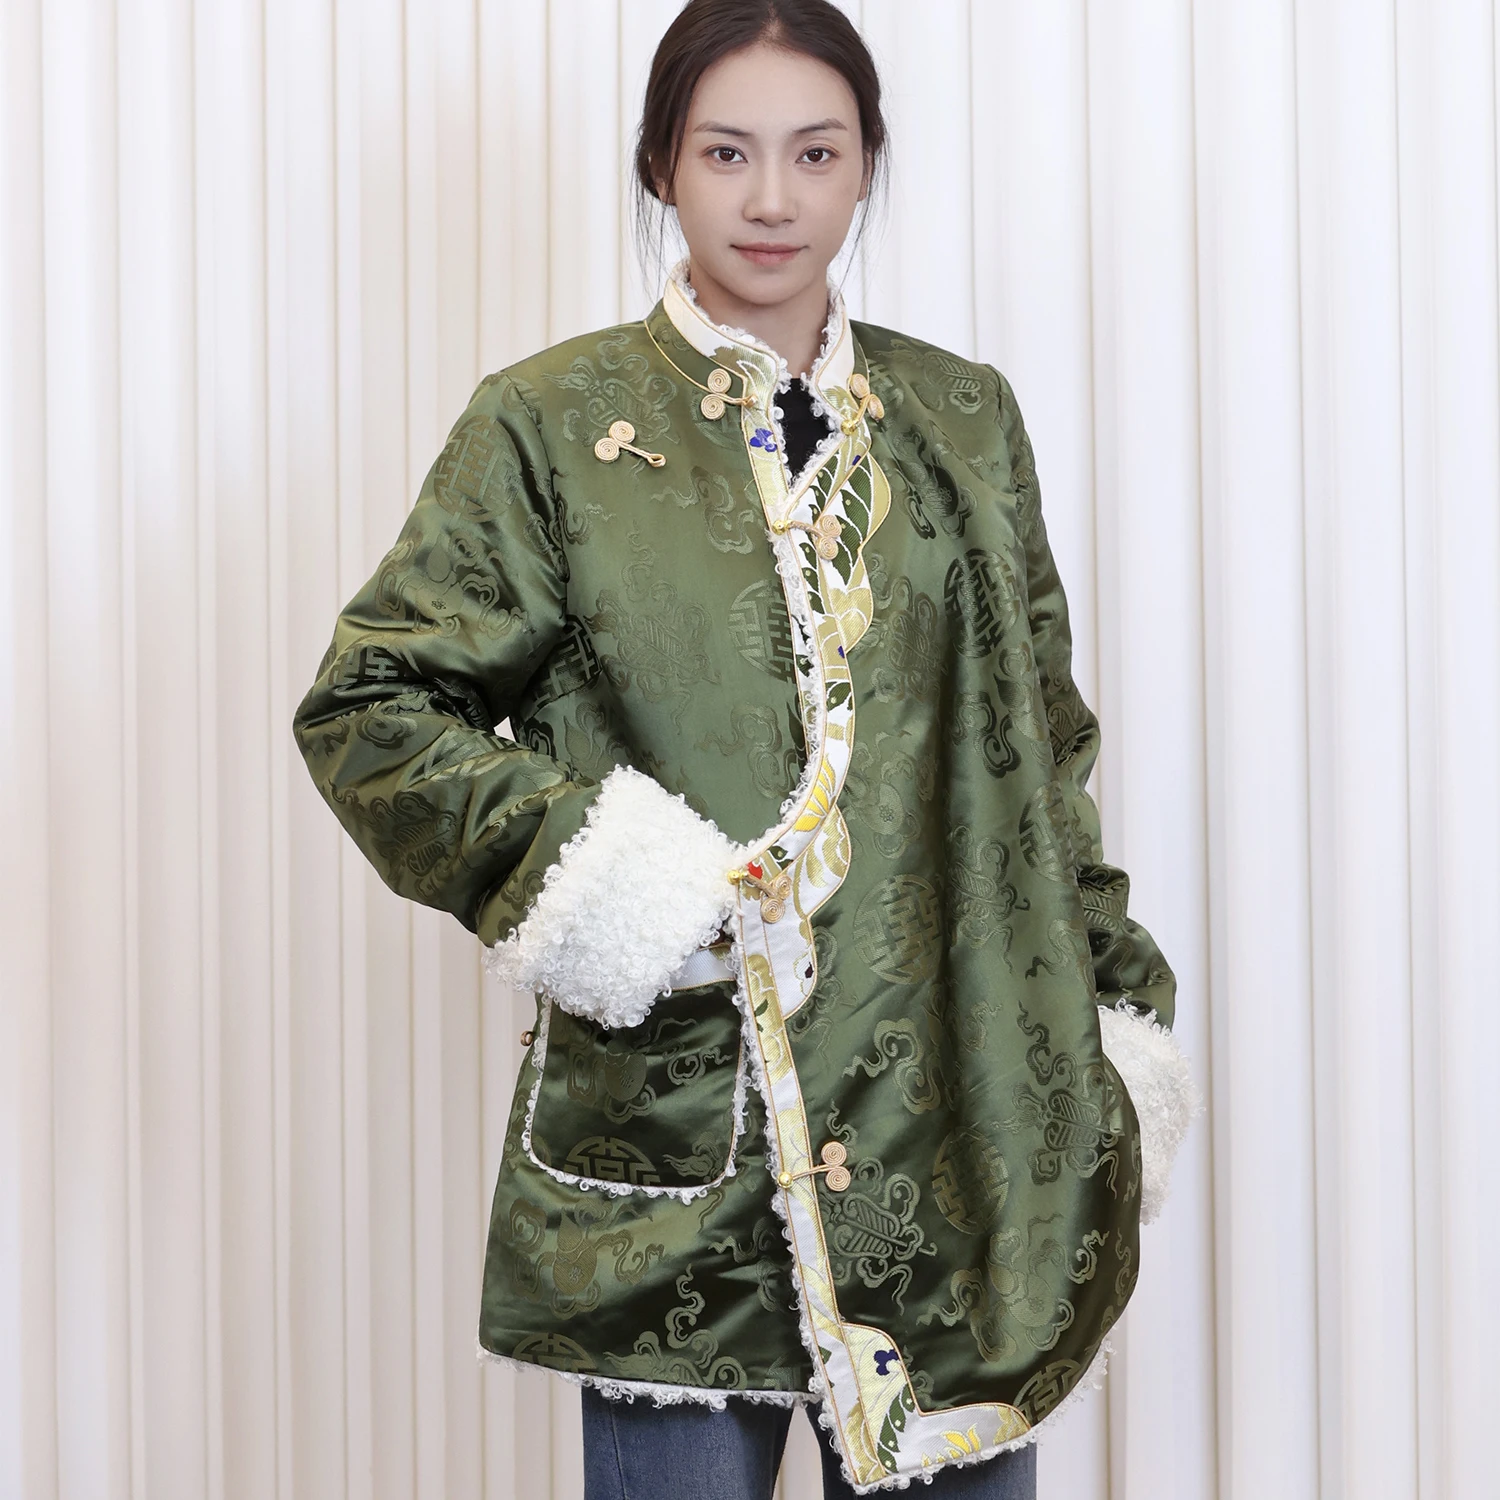  Зеленый Топ Зимнее пальто с хлопковой подкладкой Женская утолщенная хлопковая подкладка Тибетская одежда День Повседневная одежда Куртка Изображение 0